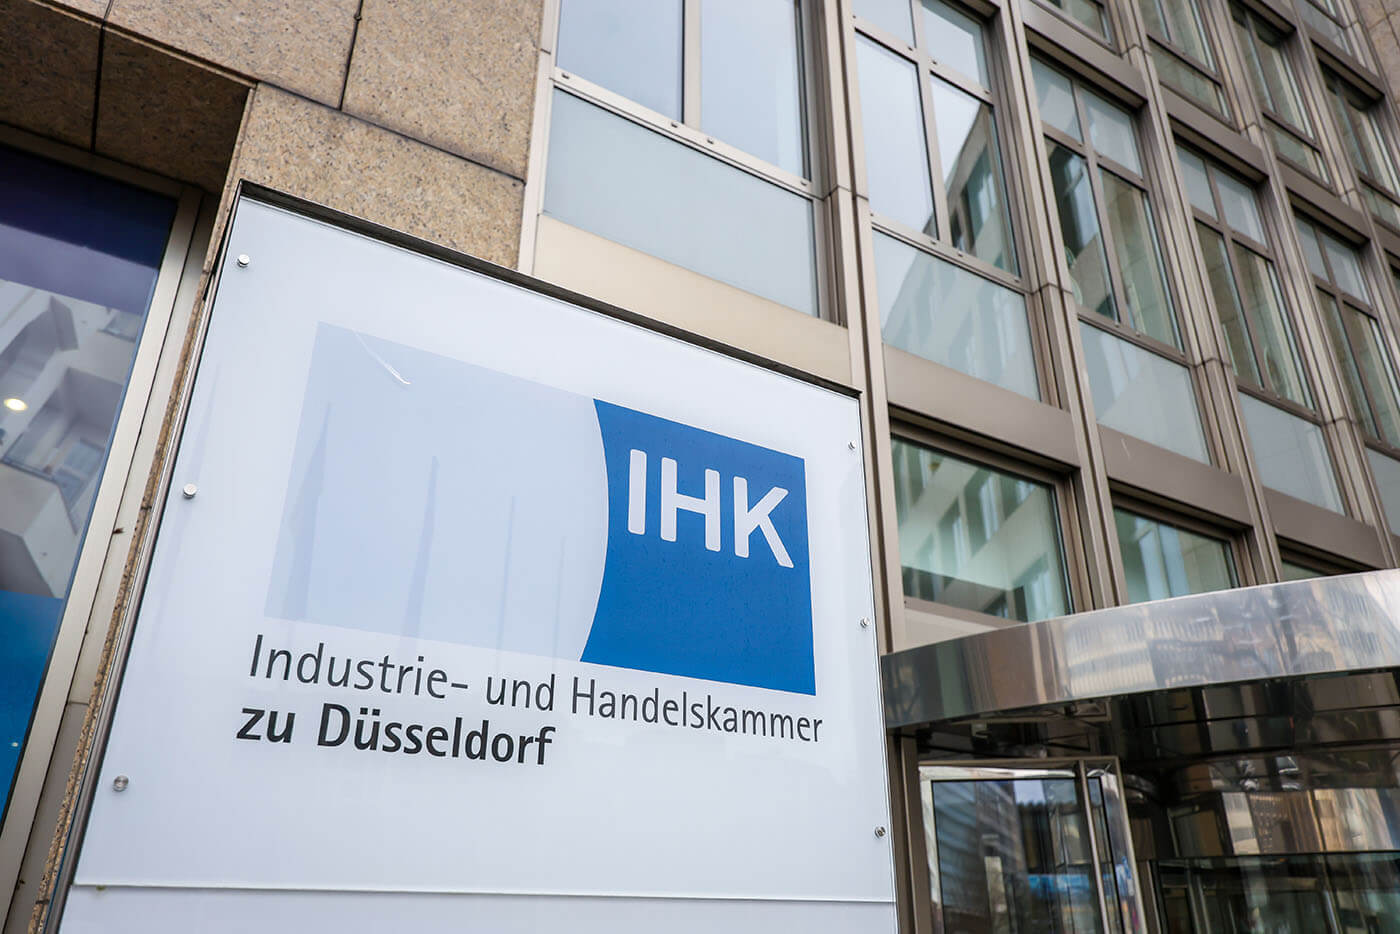 Vor  einem hohen Gebäude steht ein beleuchtbares Namenschild. Darauf steht "IHK Industrie- und Handelskammer zu Düsseldorf".